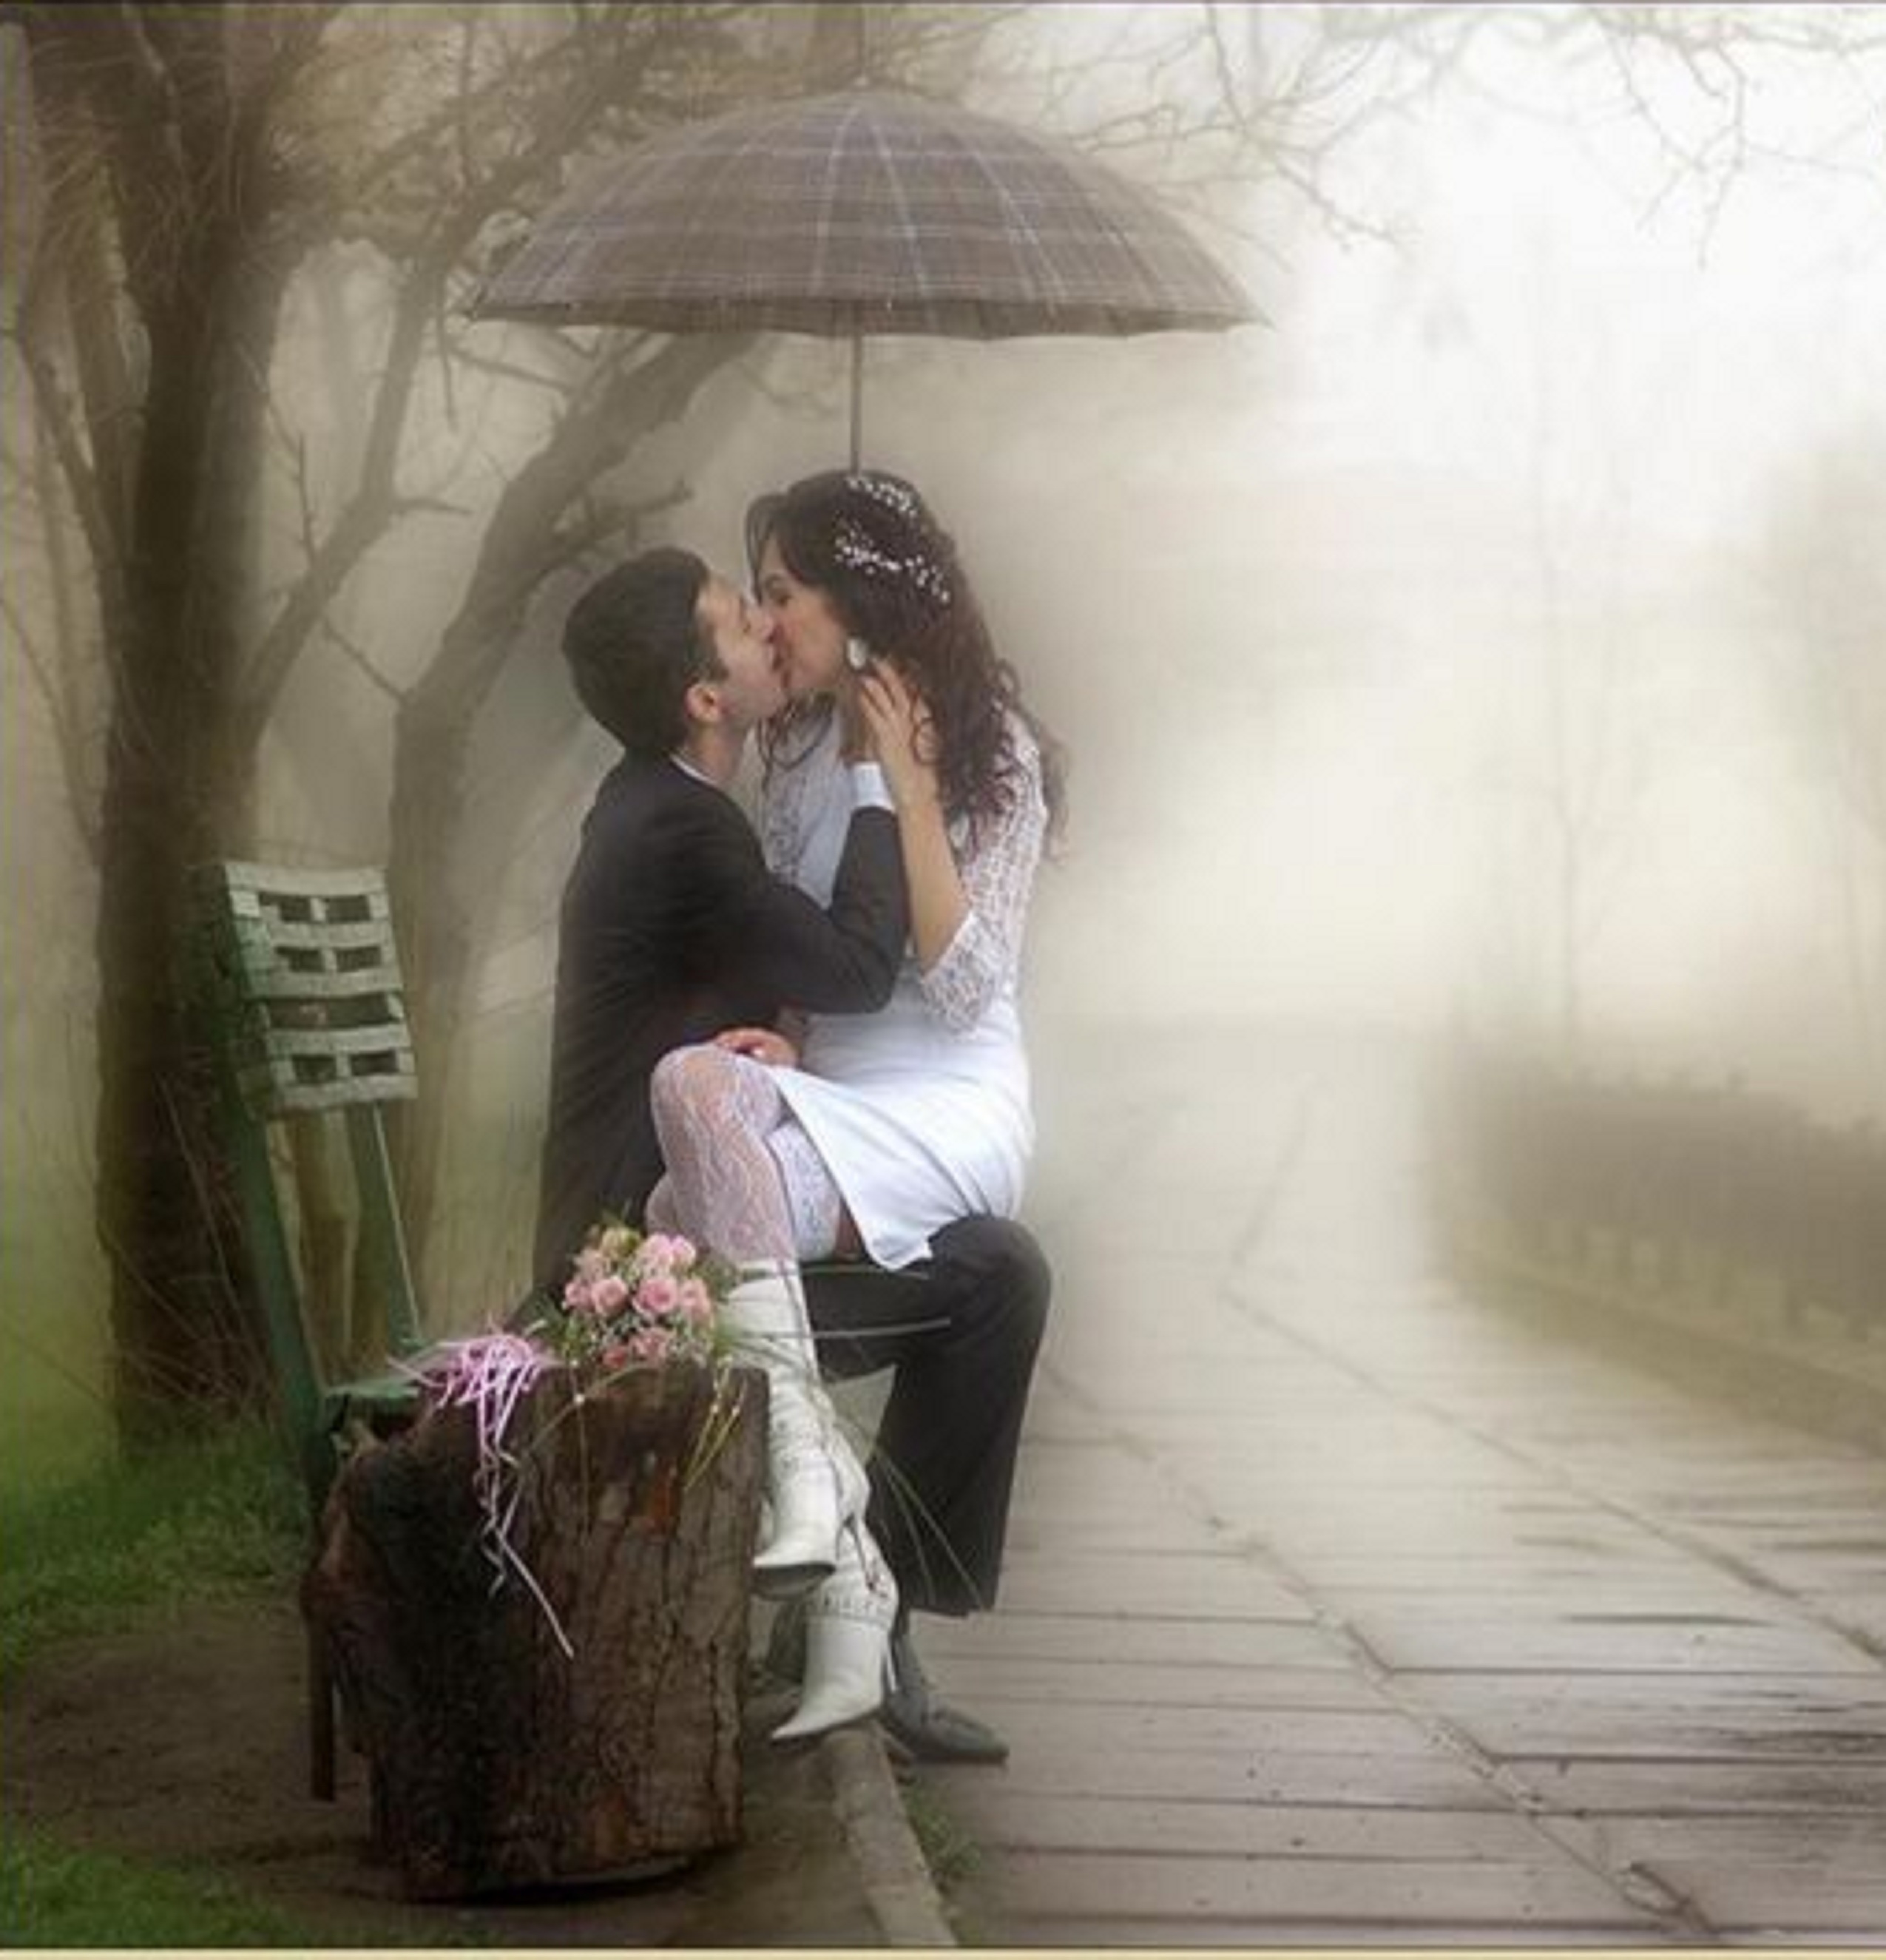 Best Kiss Day Wallpaper - Sweet Couple In Rain , HD Wallpaper & Backgrounds